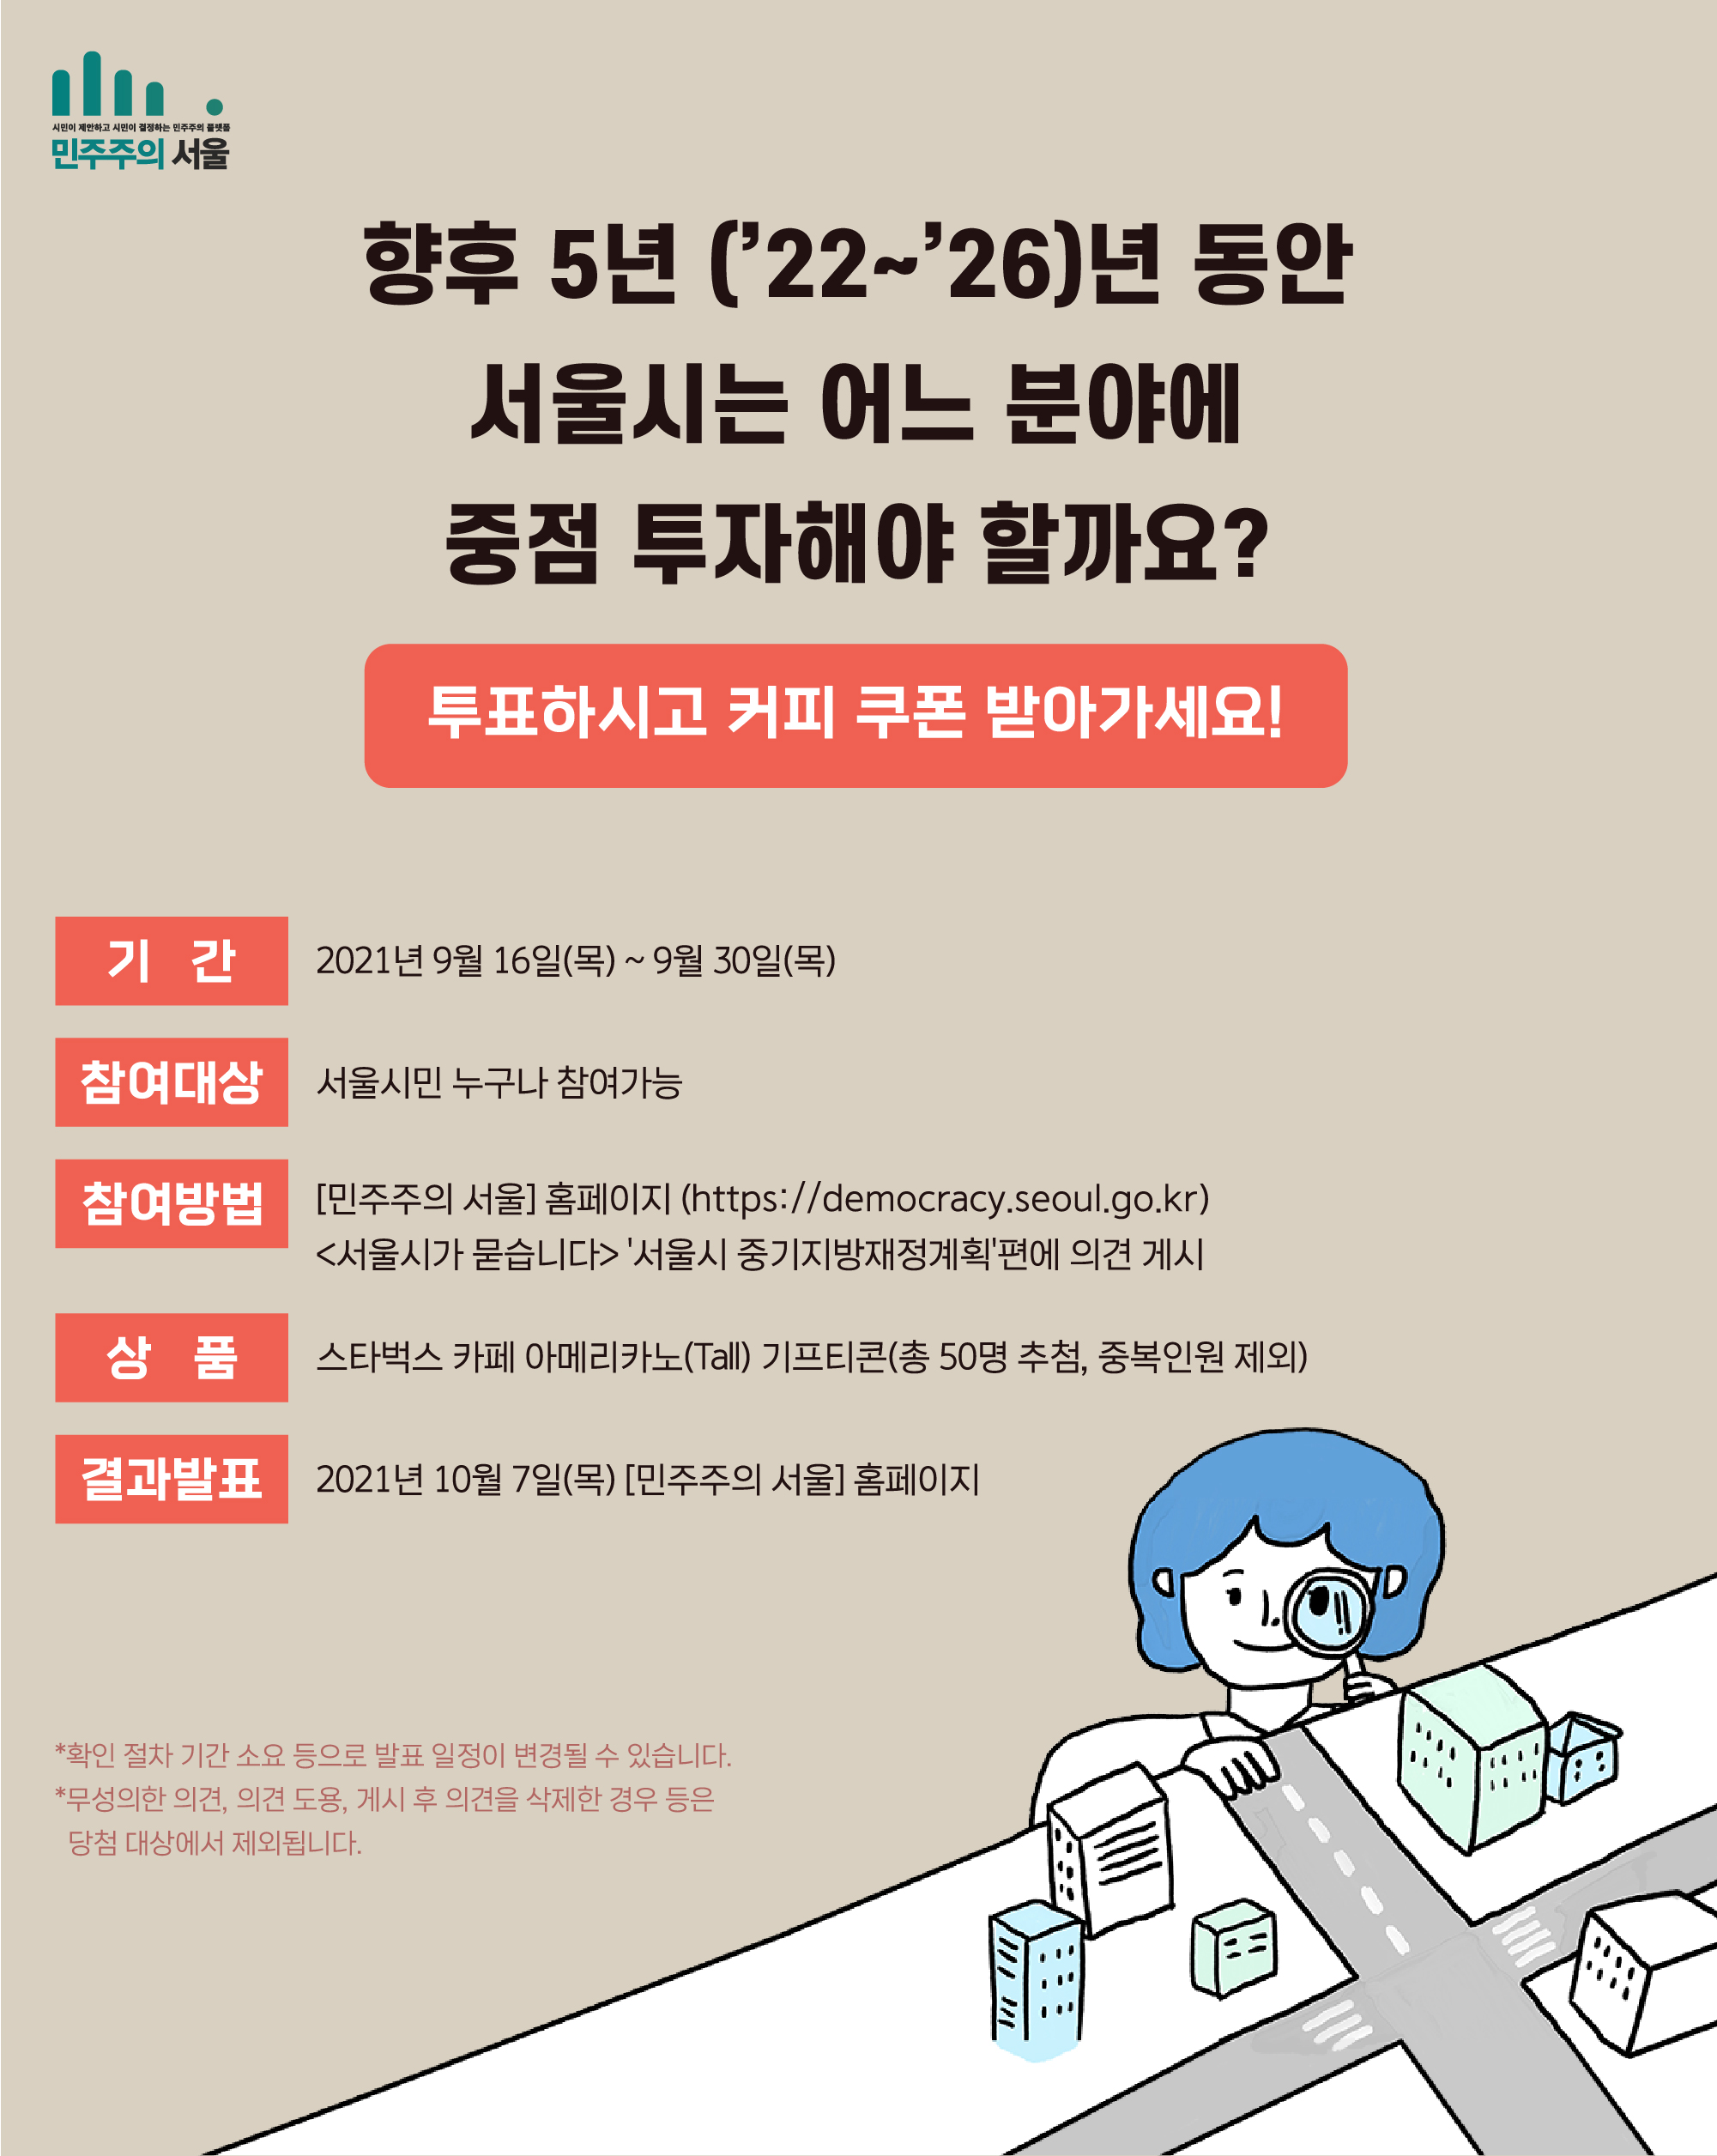 향후 5년 (22~26)년 동안 서울시는 어느 분야에 중점 투자해야 할까요? 투표하시고 커피 쿠폰 받아가세요! 기간 : 2021년 9월16일(목)~9월30일(목) 참여대상 : 서울시민 누구나 참여가능 참여방법: 「민주주의 서울」홈페이지 (https://democracy.seoul.go.kr)<서우릿가 묻습니다 /> 서울시 중기지방재정계획편에 의견 게시 상품 : 스타벅스 카페 아메리카노(Tall) 기프티콘(총 50명 추첨, 중복인원 제외) 결과발표 2021년 10월 7일(목)「민주주의 서울 」홈페이지 *확인 절차 기간 소요 등으로 발표 일정이 변경될 수 있습니다. *무성의한 의견, 의견 도용, 개시 후 의견을 삭제한 경우 등은 당첨 대상에서 제외됩니다.